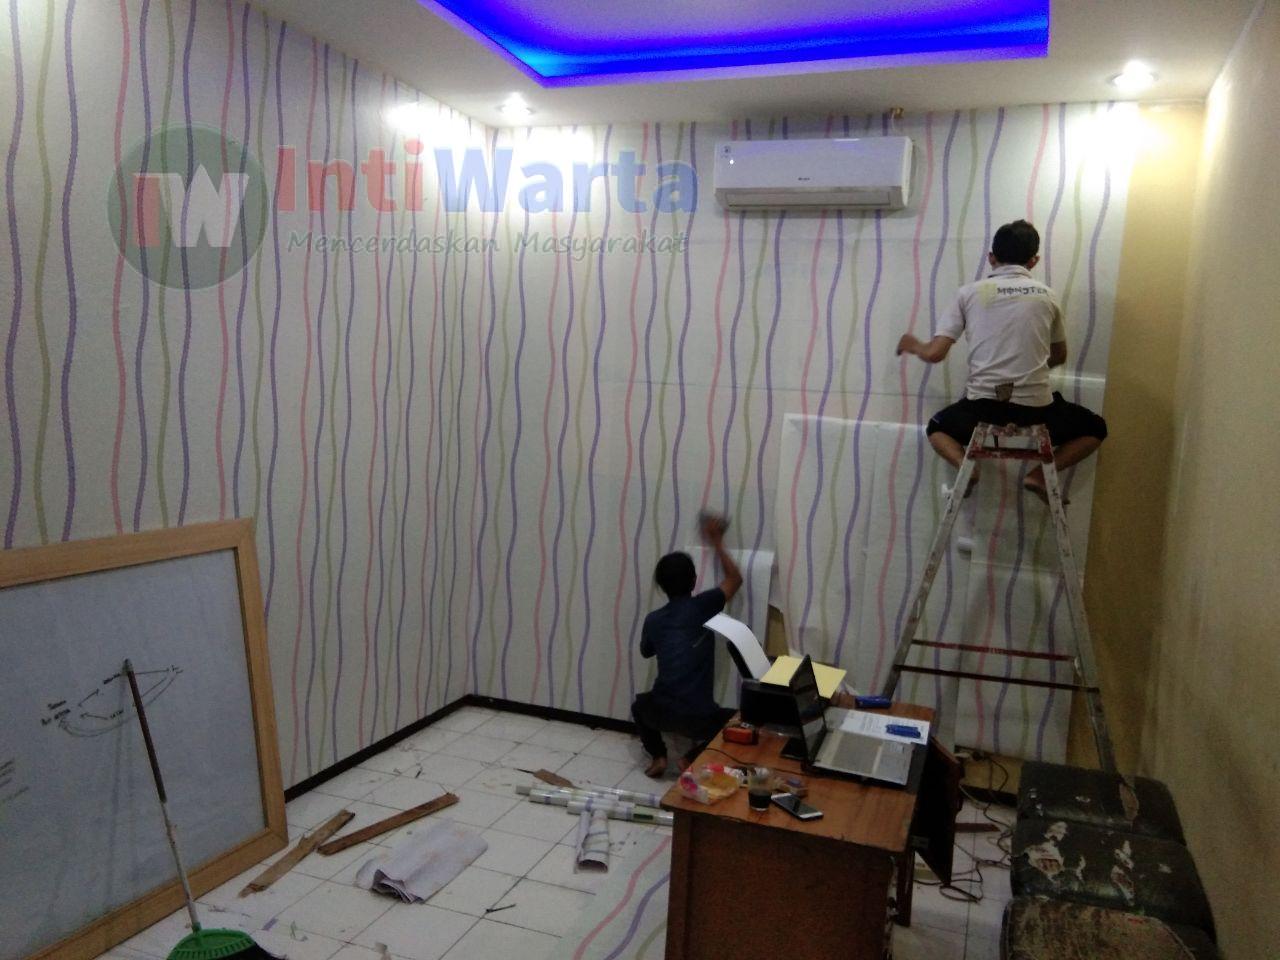 Rumah Wallpaper Surabaya Layani Jasa Pasang